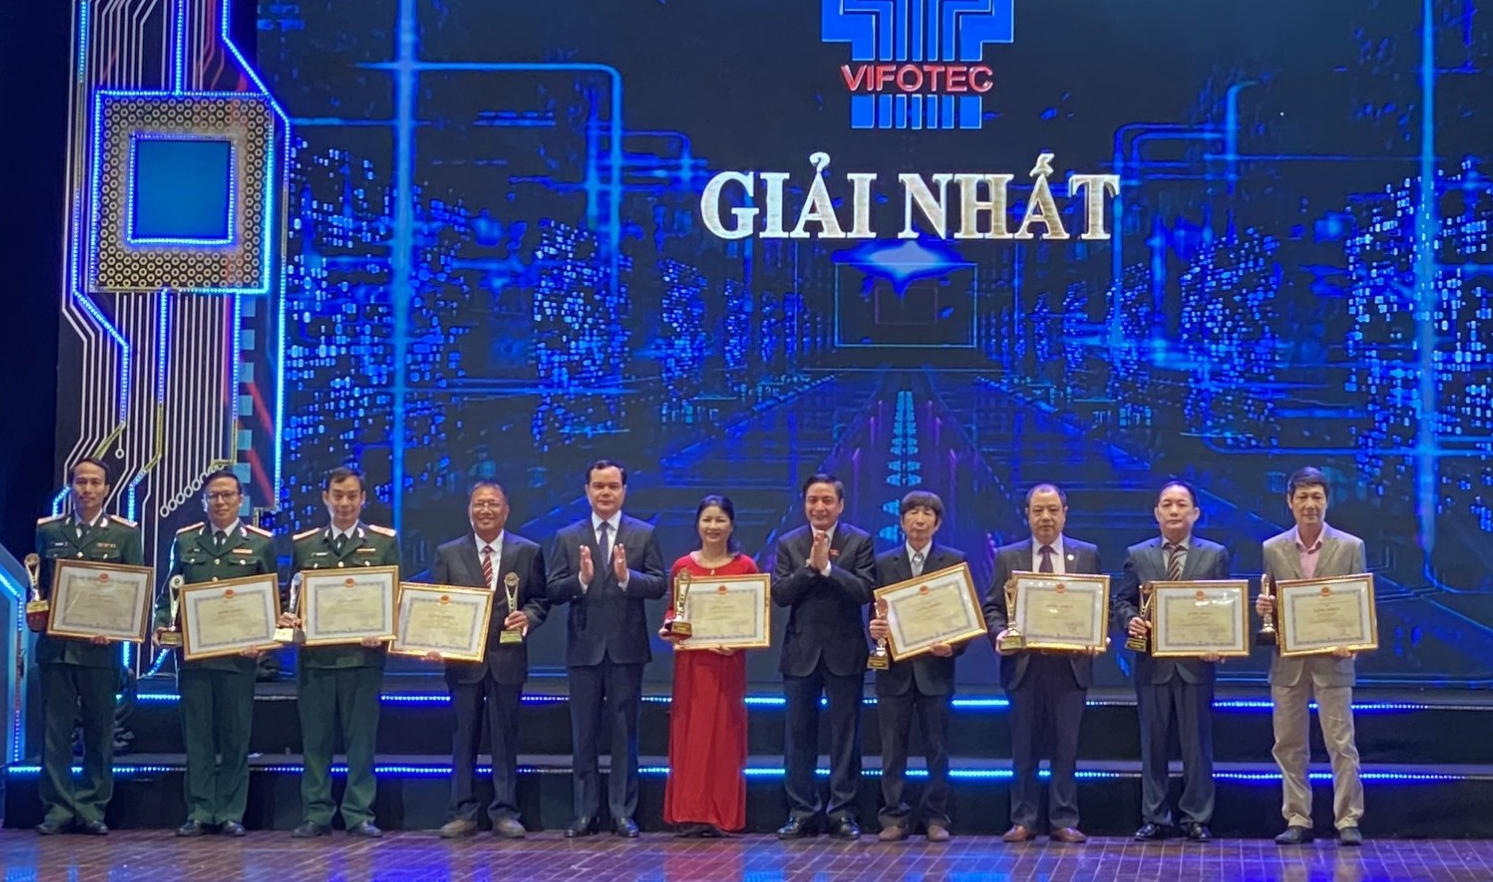 BIENDONG POC và Viện Dầu khí Việt Nam cùng giành giải Nhất Vifotec 2022”